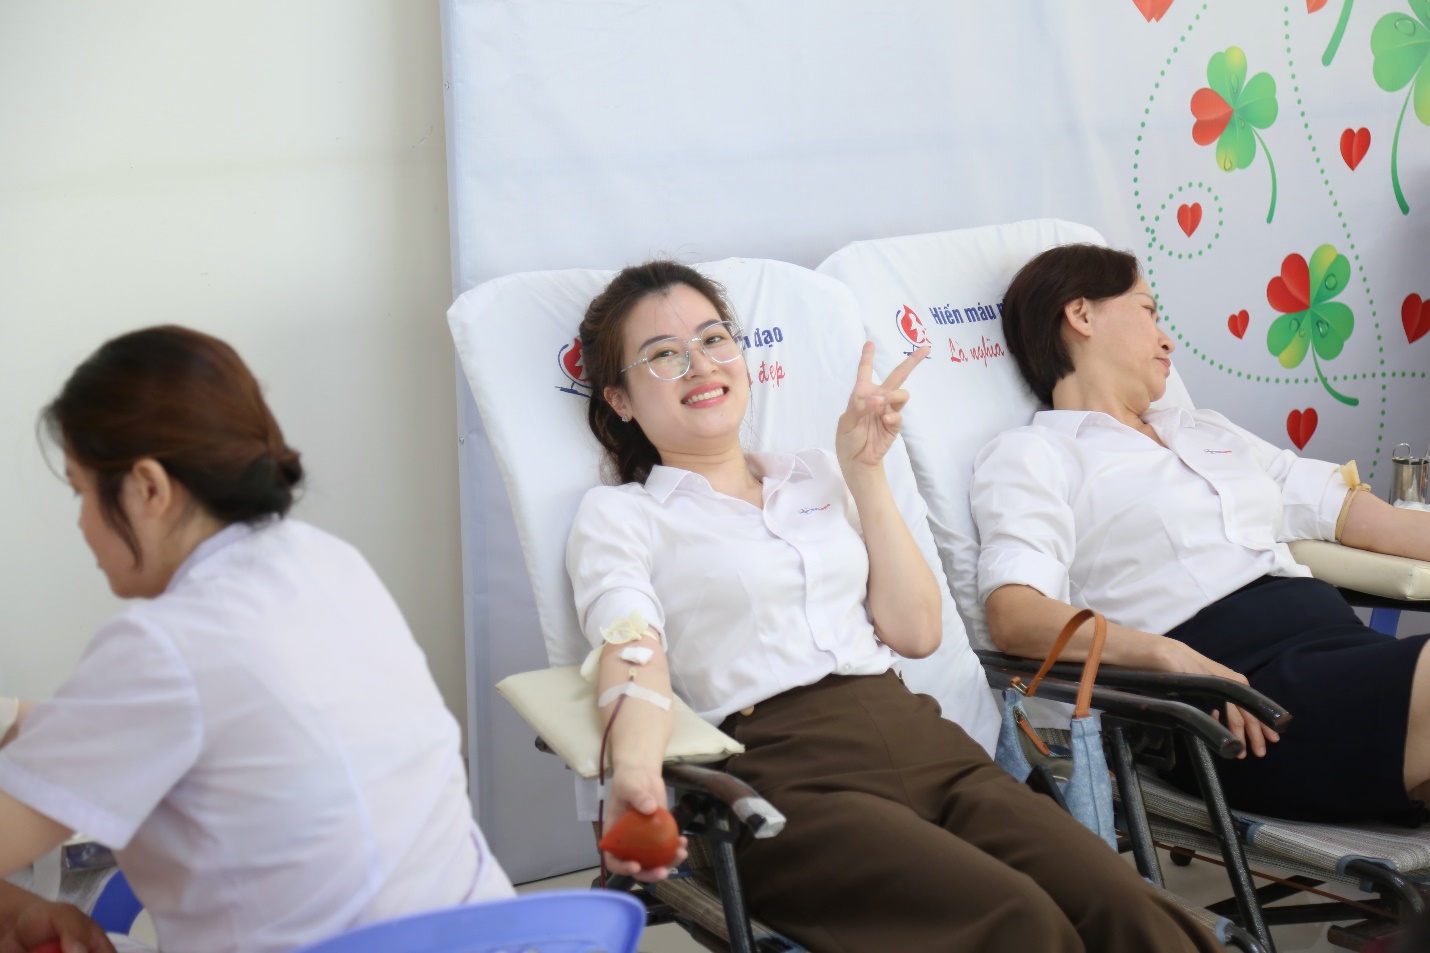 Chị Lê Hoài Phương – Điện lực Thanh Khê (PC Đà Nẵng) tham gia hiến máu